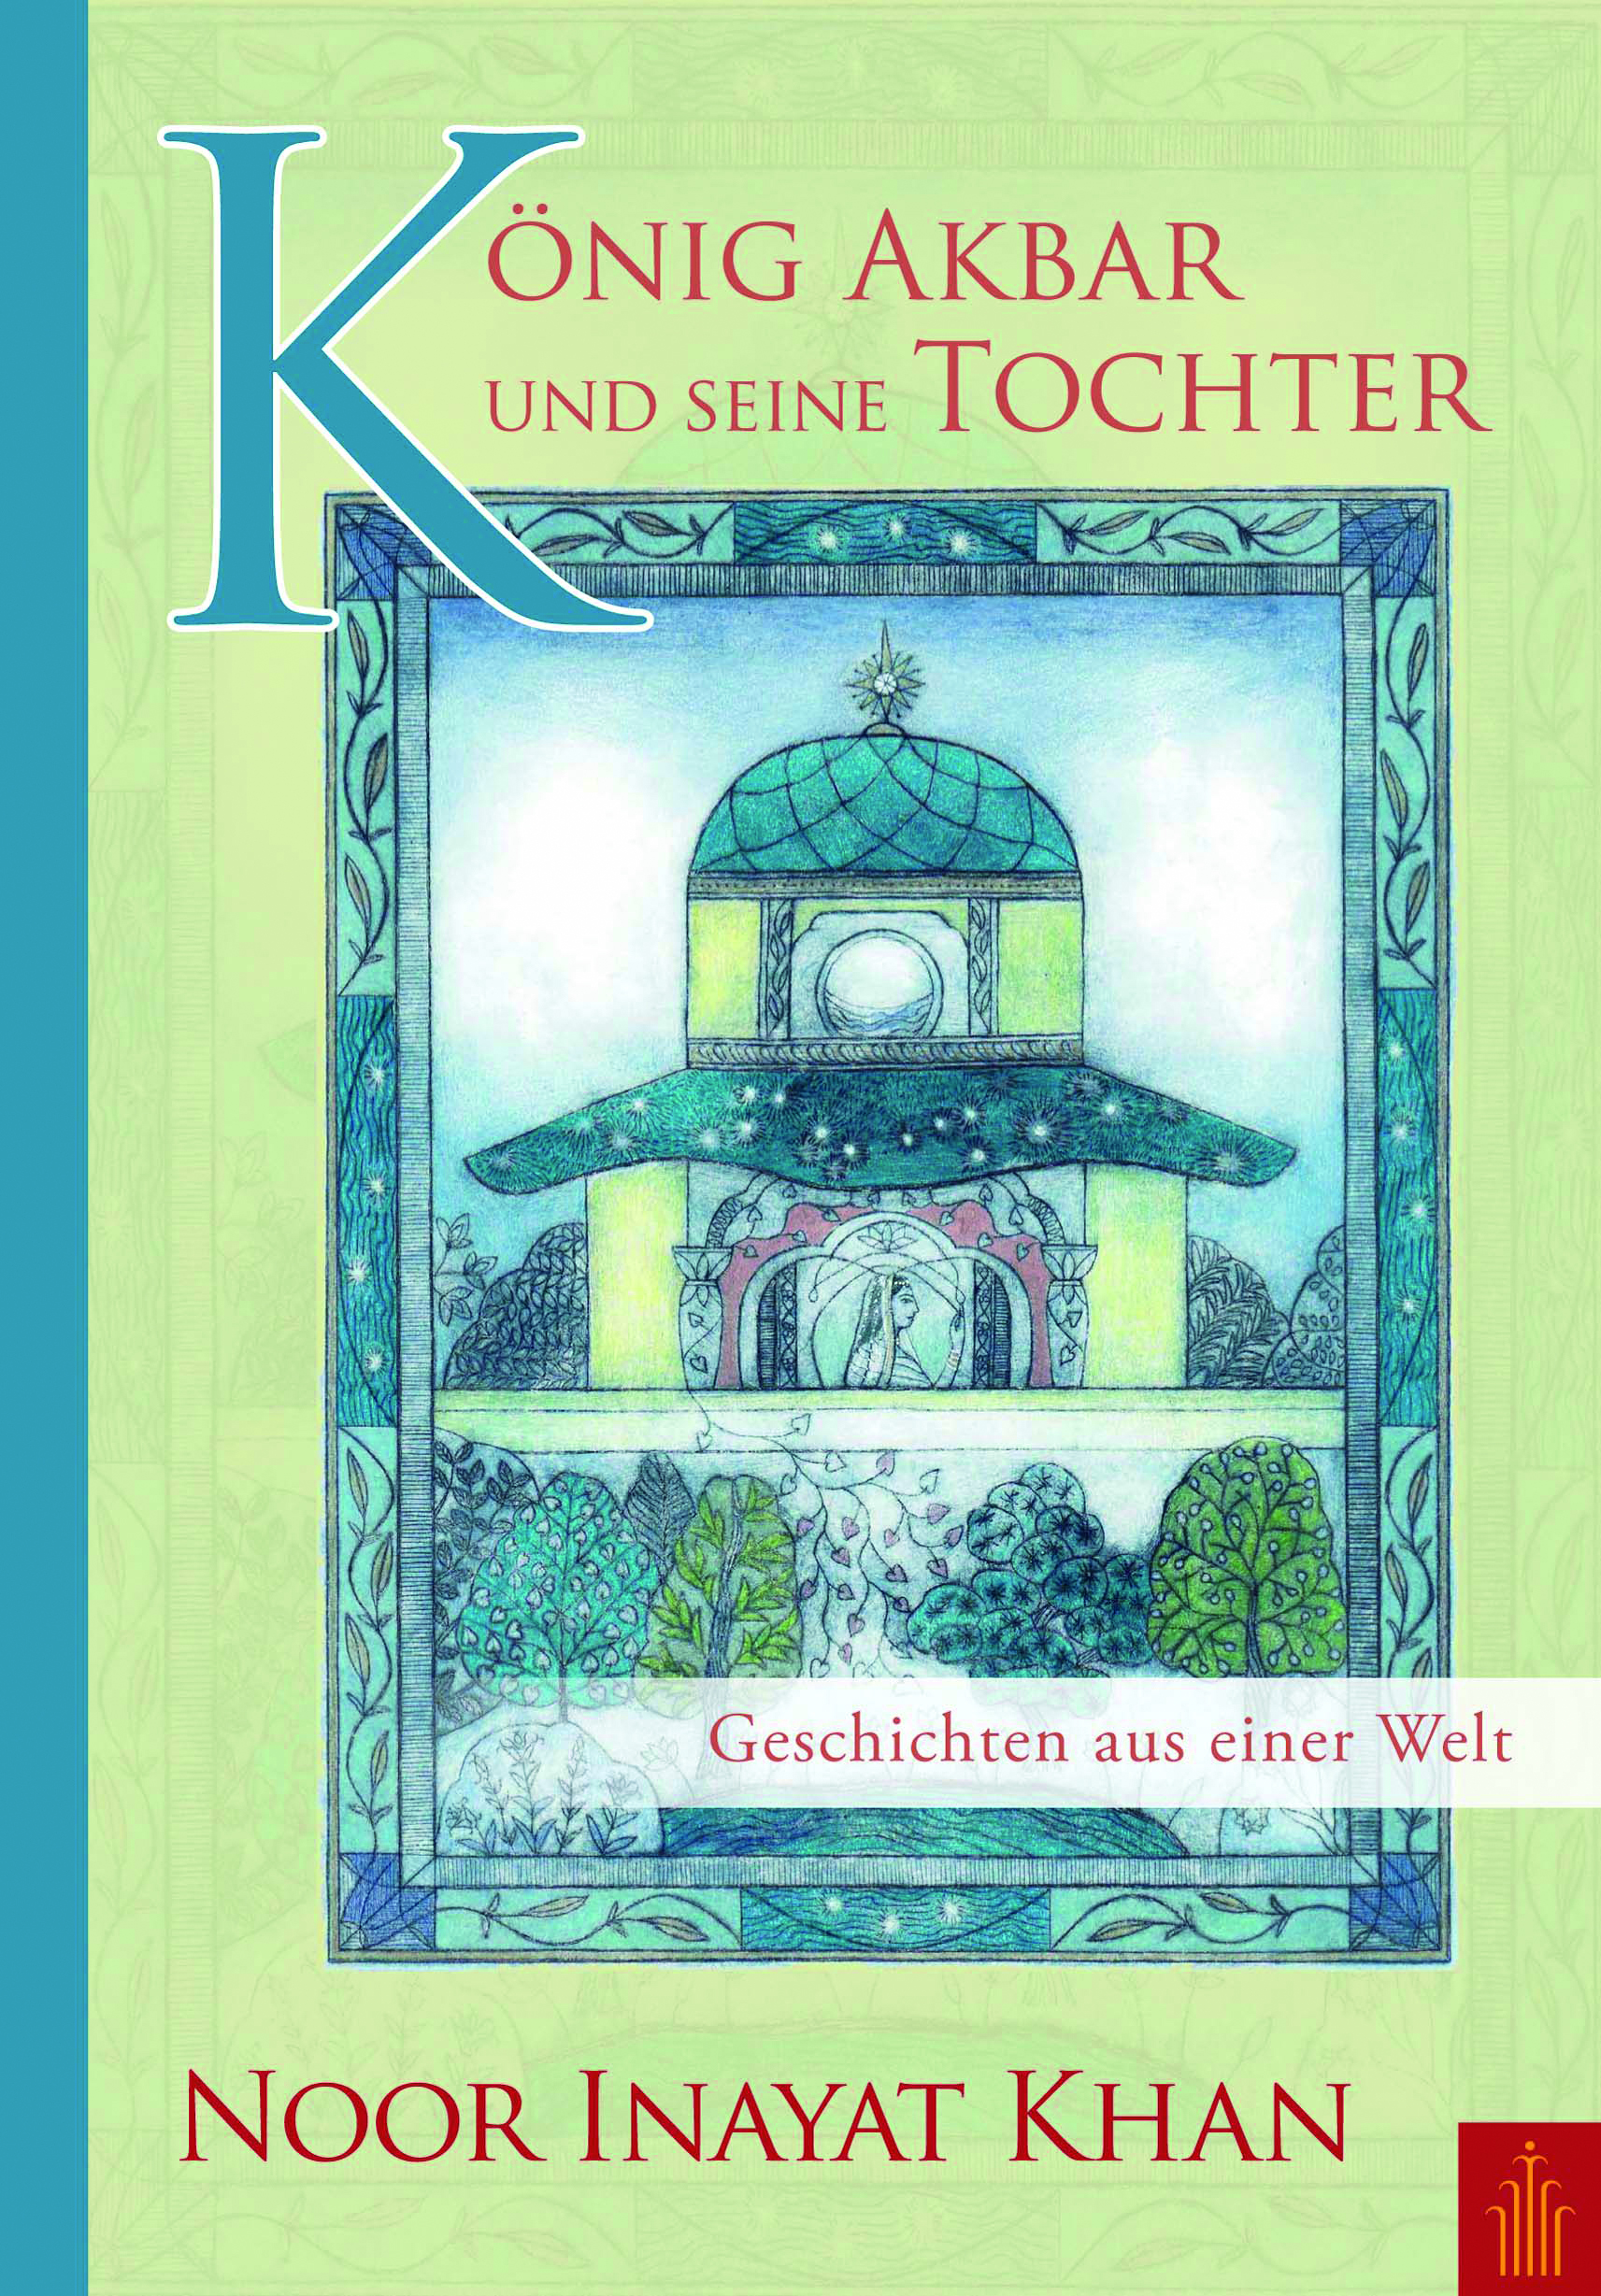 Buchcover "König Akbar und seine Tochter" im Heilbronn-Verlag